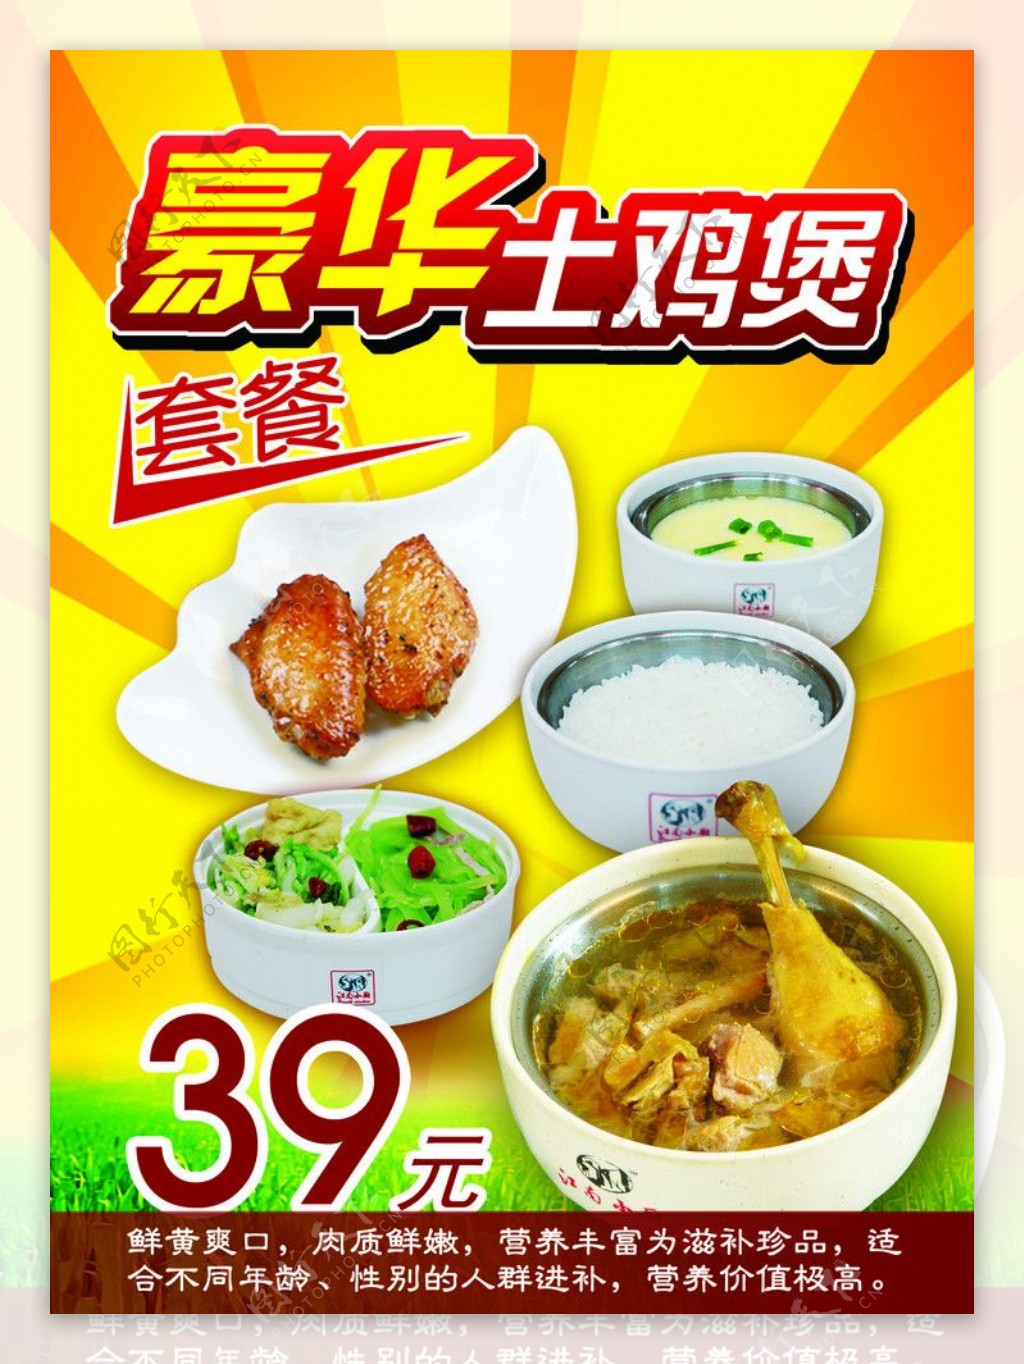 菜品宣传土鸡煲套餐图片